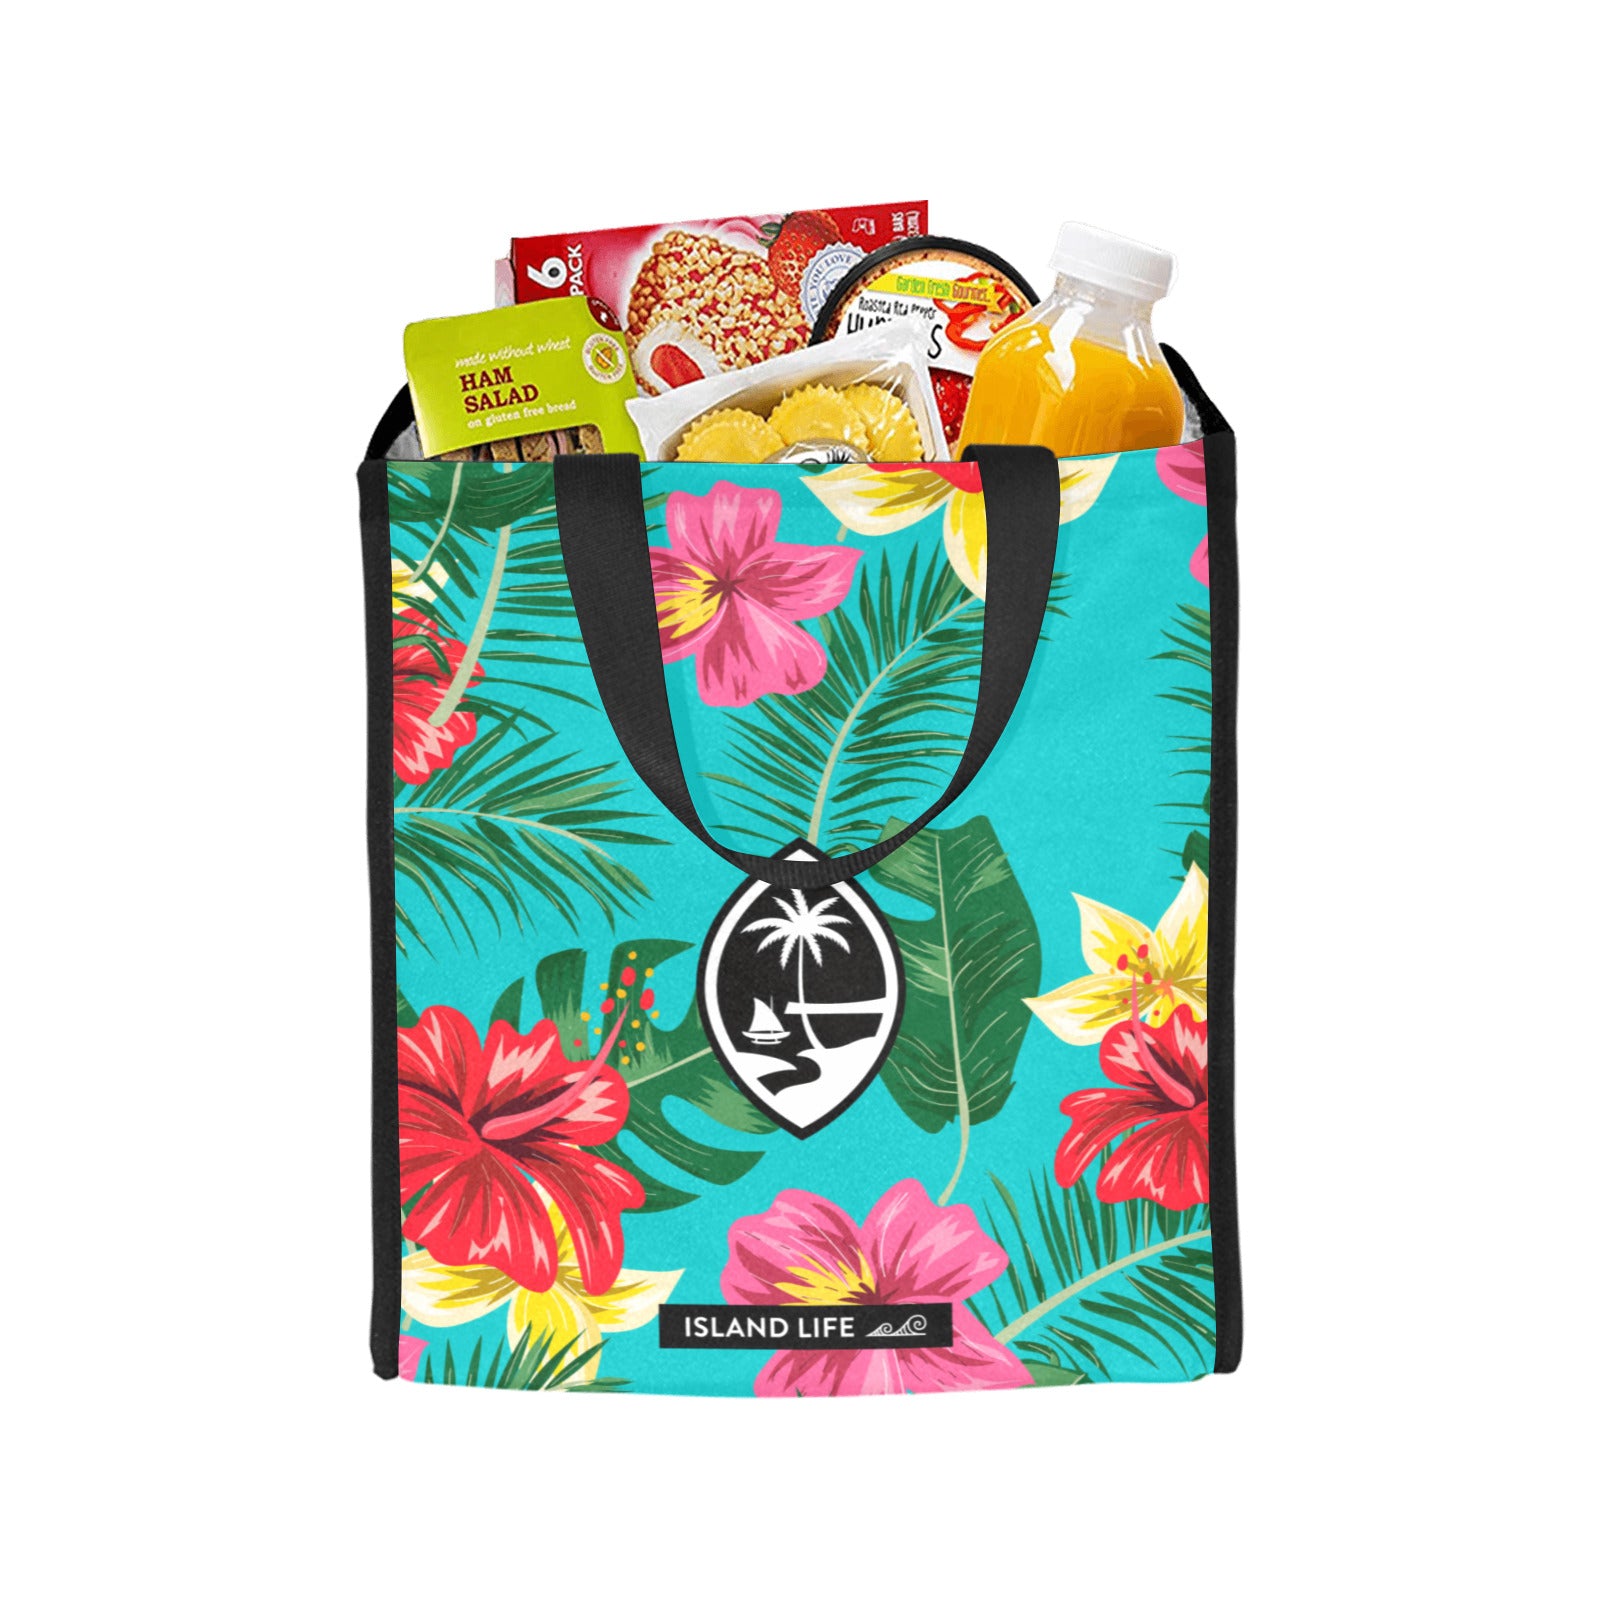 Floral Guam Balutan Large Picnic Tote Bag